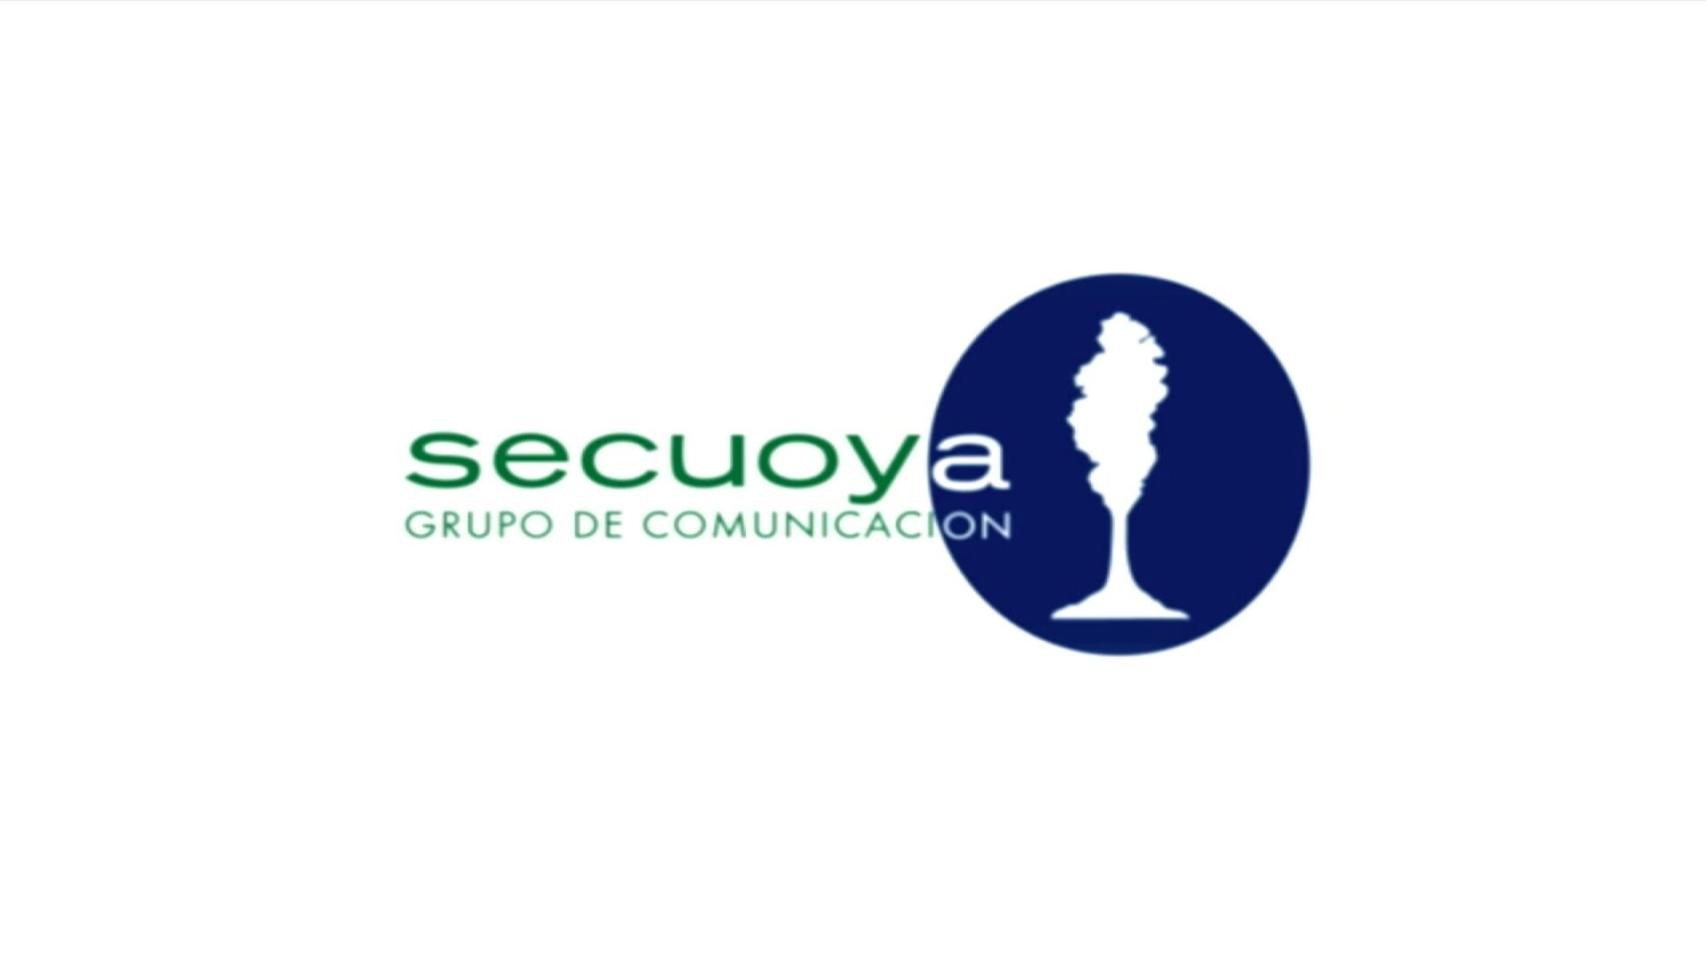 Por qué Secuoya ha conseguido un canal TDT a pesar de su deuda